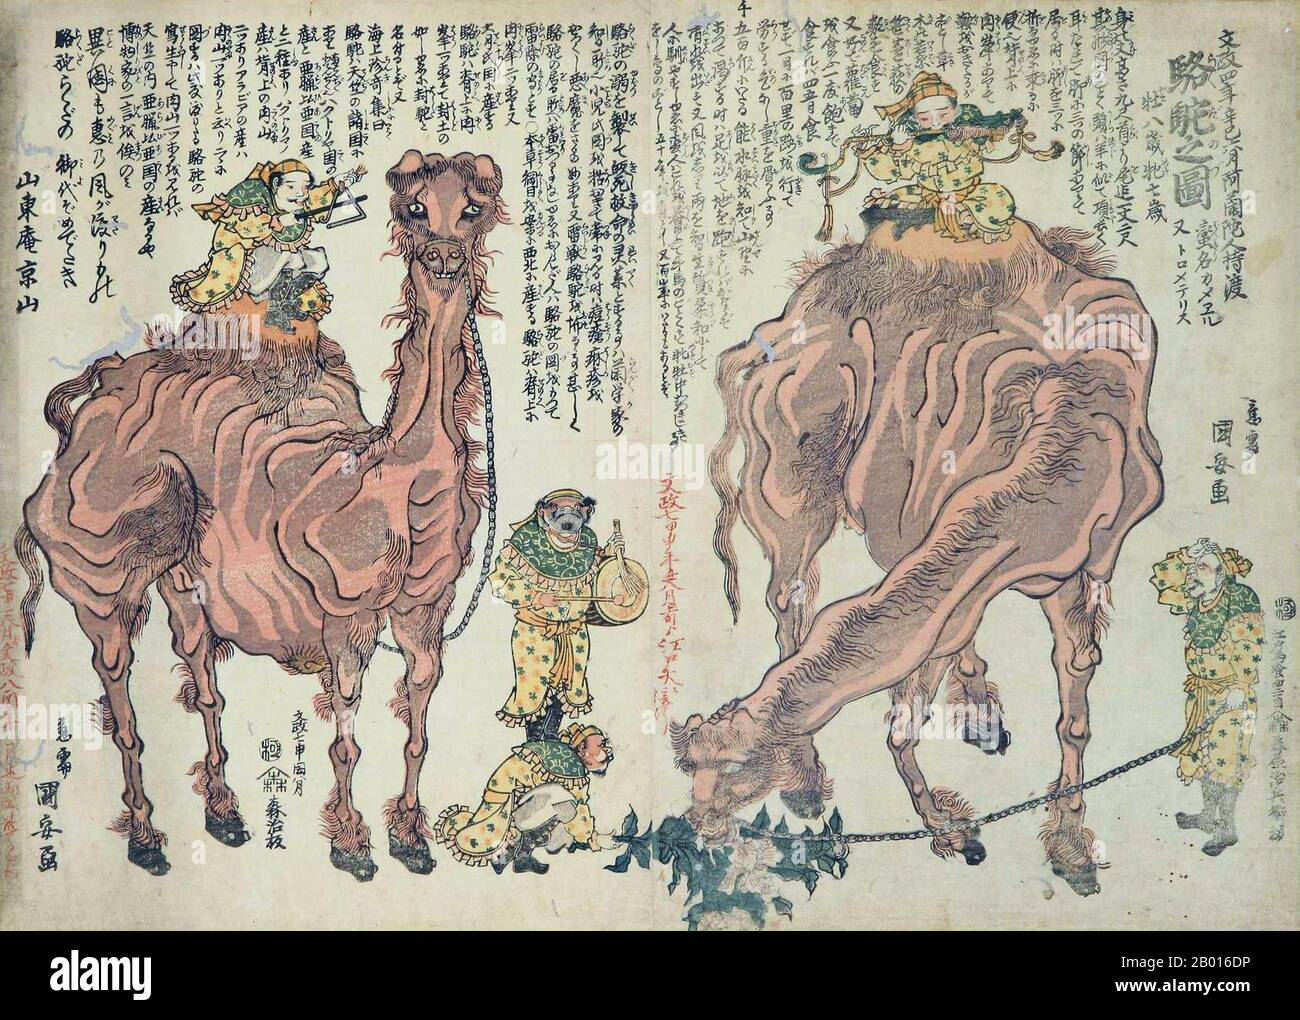 Japon: 'Chameaux et musiciens'.Imprimé en blocs de bois Ukiyo-e par Utagawa Kuniyasu (1794-1832), 1824.Les chameaux et les musiciens sont des rejoins de la dynastie Tang et de la route de la soie, en particulier des artistes de Sogdian ou d'Asie centrale à la Cour de Tang.Utagawa Kuniyasu, né Yasugoro et également connu sous le nom d'Iposai et Nishikawa Yasunobu, était un artiste japonais relativement populaire de l'école Utagawa.Il a été enseigné par Utagawa Toyokuni, et illustré autour d'une centaine de livres tout au long de sa carrière.Il a également conçu des centaines d'empreintes autonomes d'acteurs (yakusha-e) et de beautés (bijing-ga). Banque D'Images